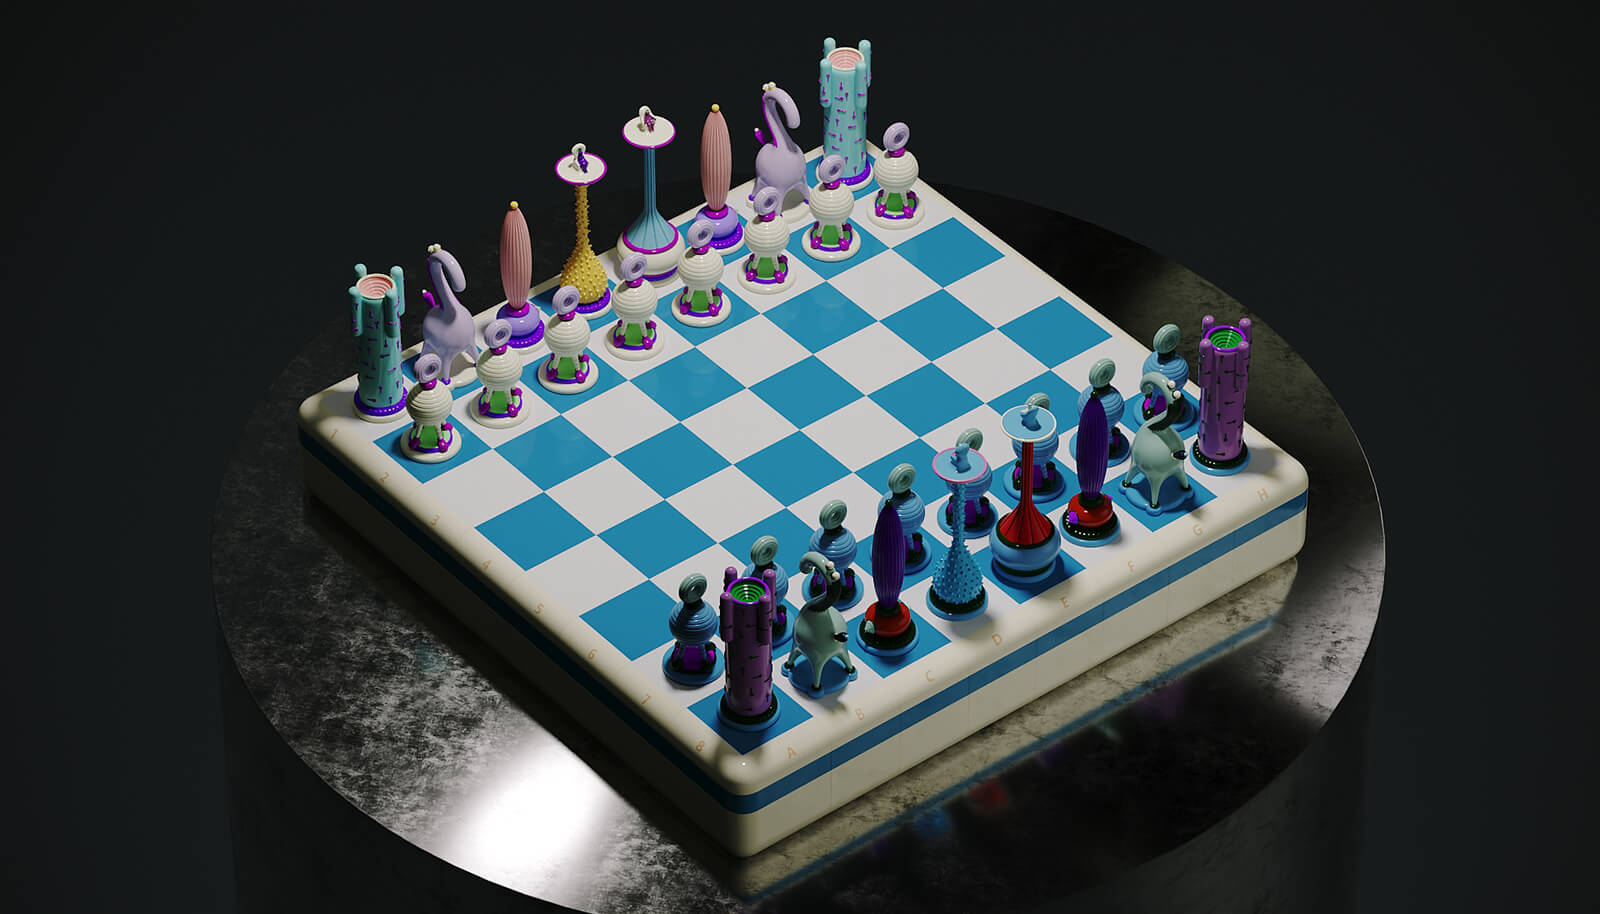 Los relajantes tonos pasteles y azules del juego de ajedrez evocan tranquilidad y creatividad en cada movimiento.Imagen: Cortesía de Taras Yoom